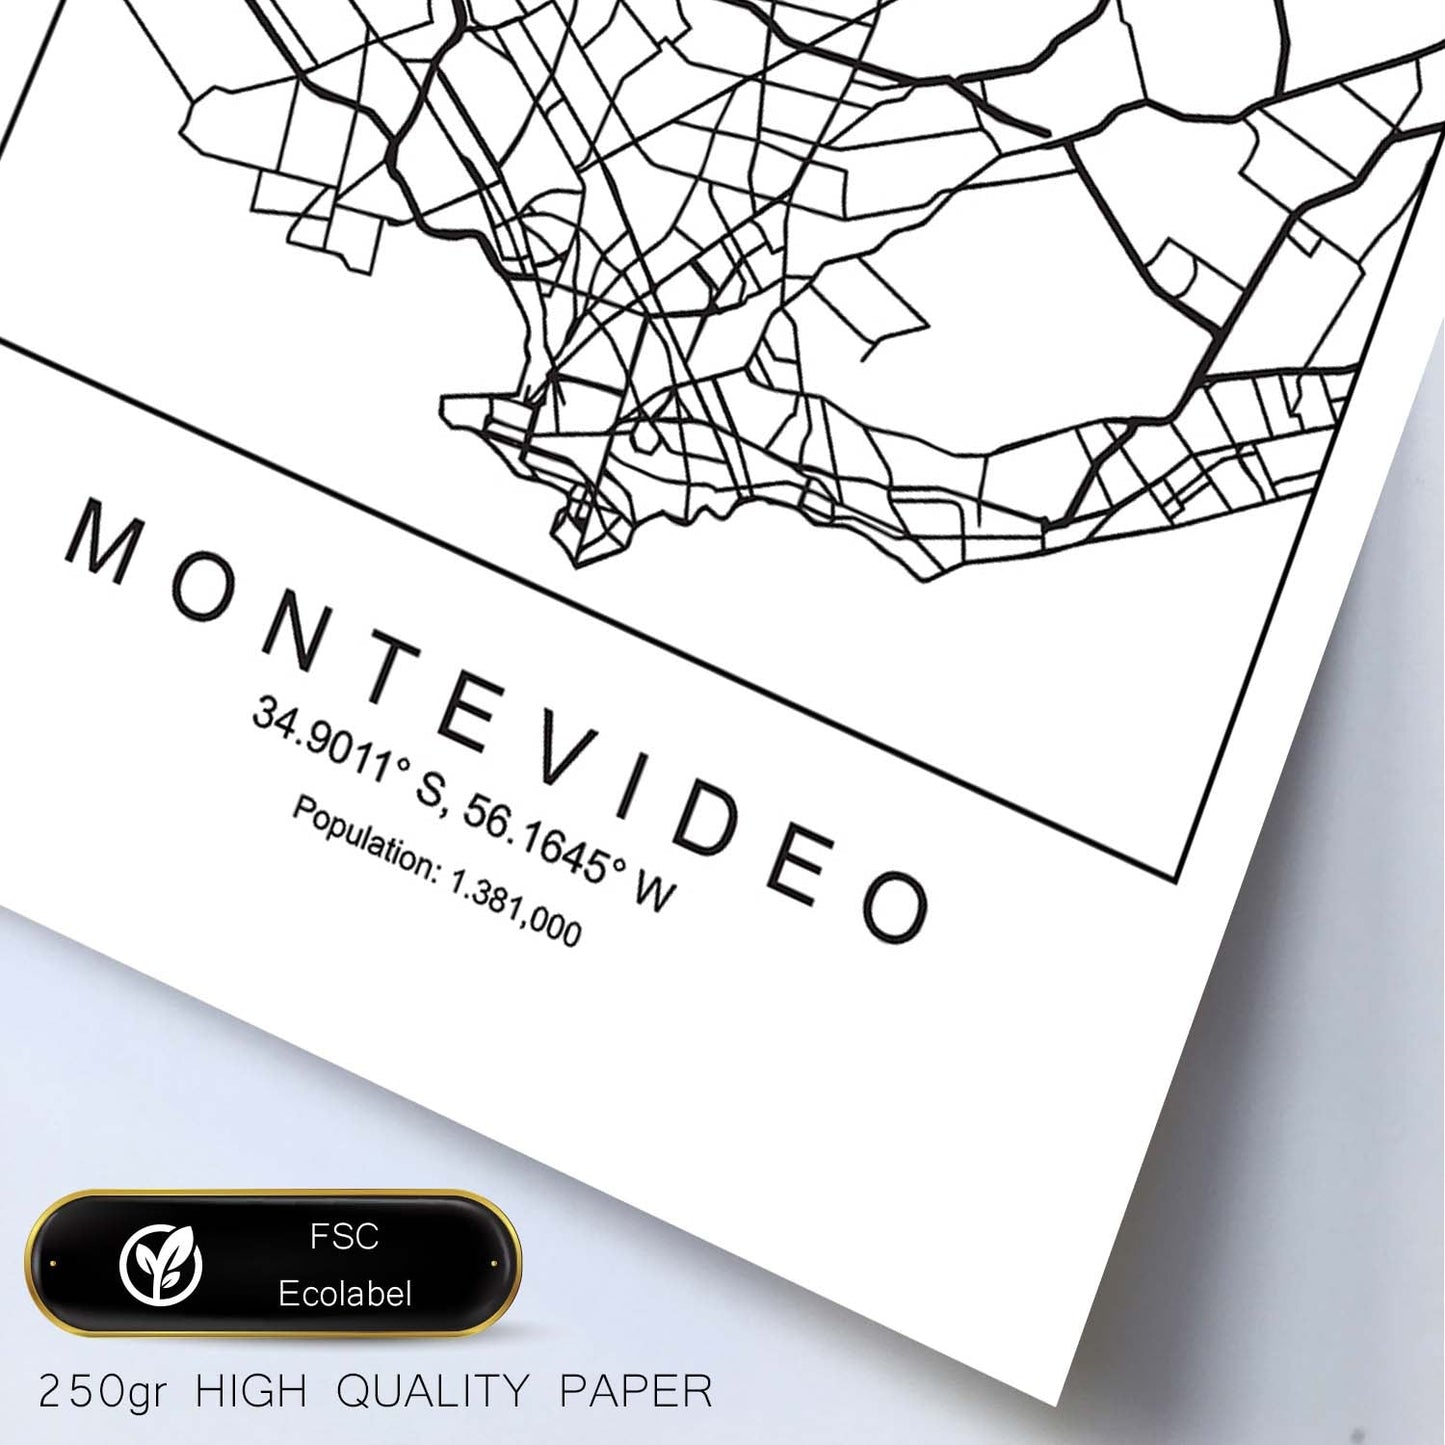 Lámina mapa de la ciudad Montevideo estilo nordico en blanco y negro.-Artwork-Nacnic-Nacnic Estudio SL